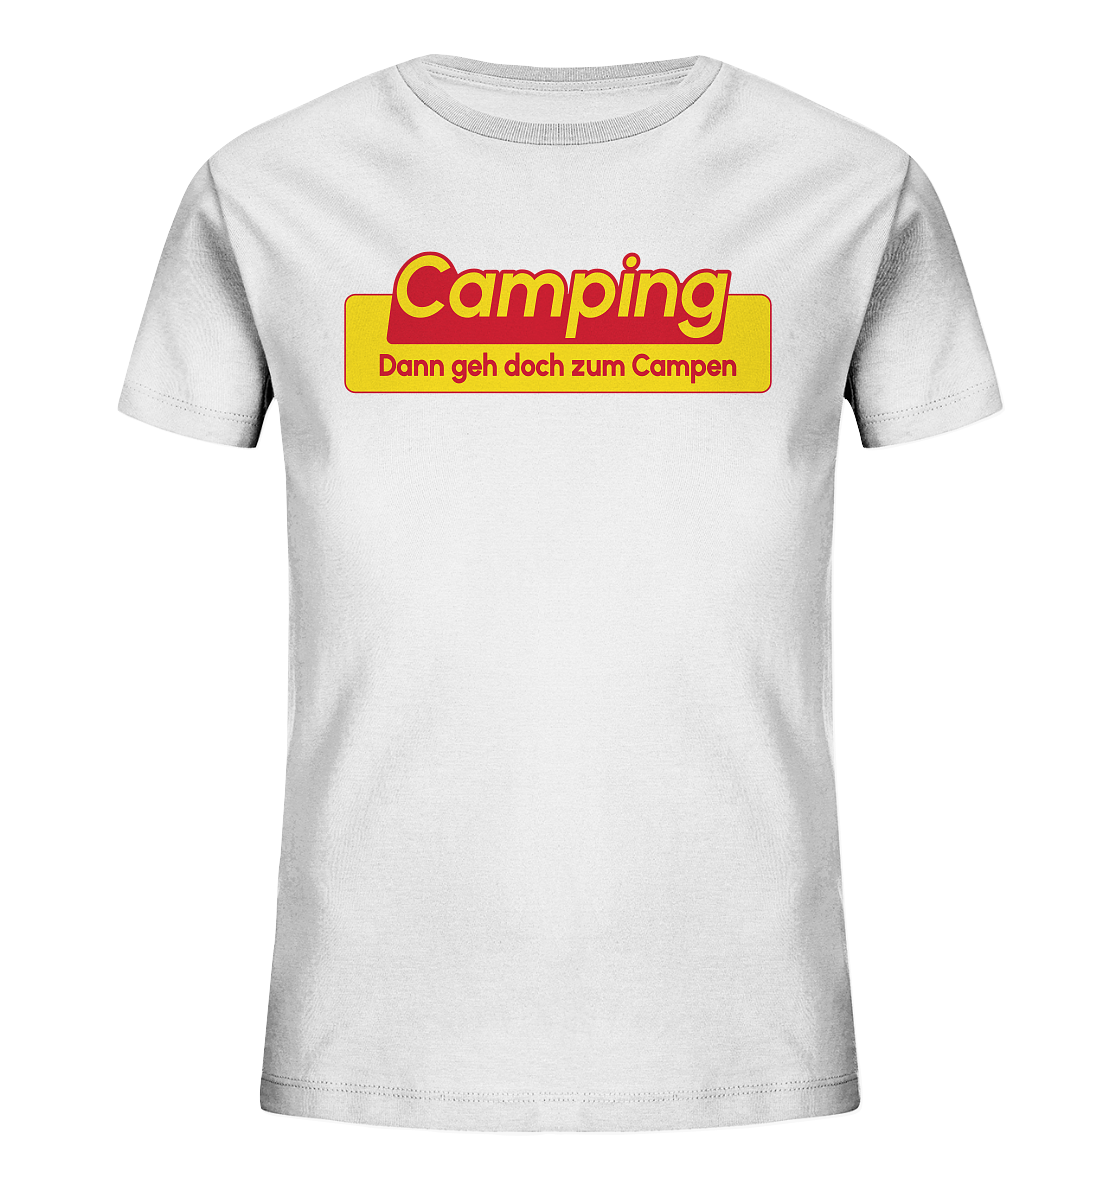 Dann geh doch zum Campen! - Kids Organic Shirt